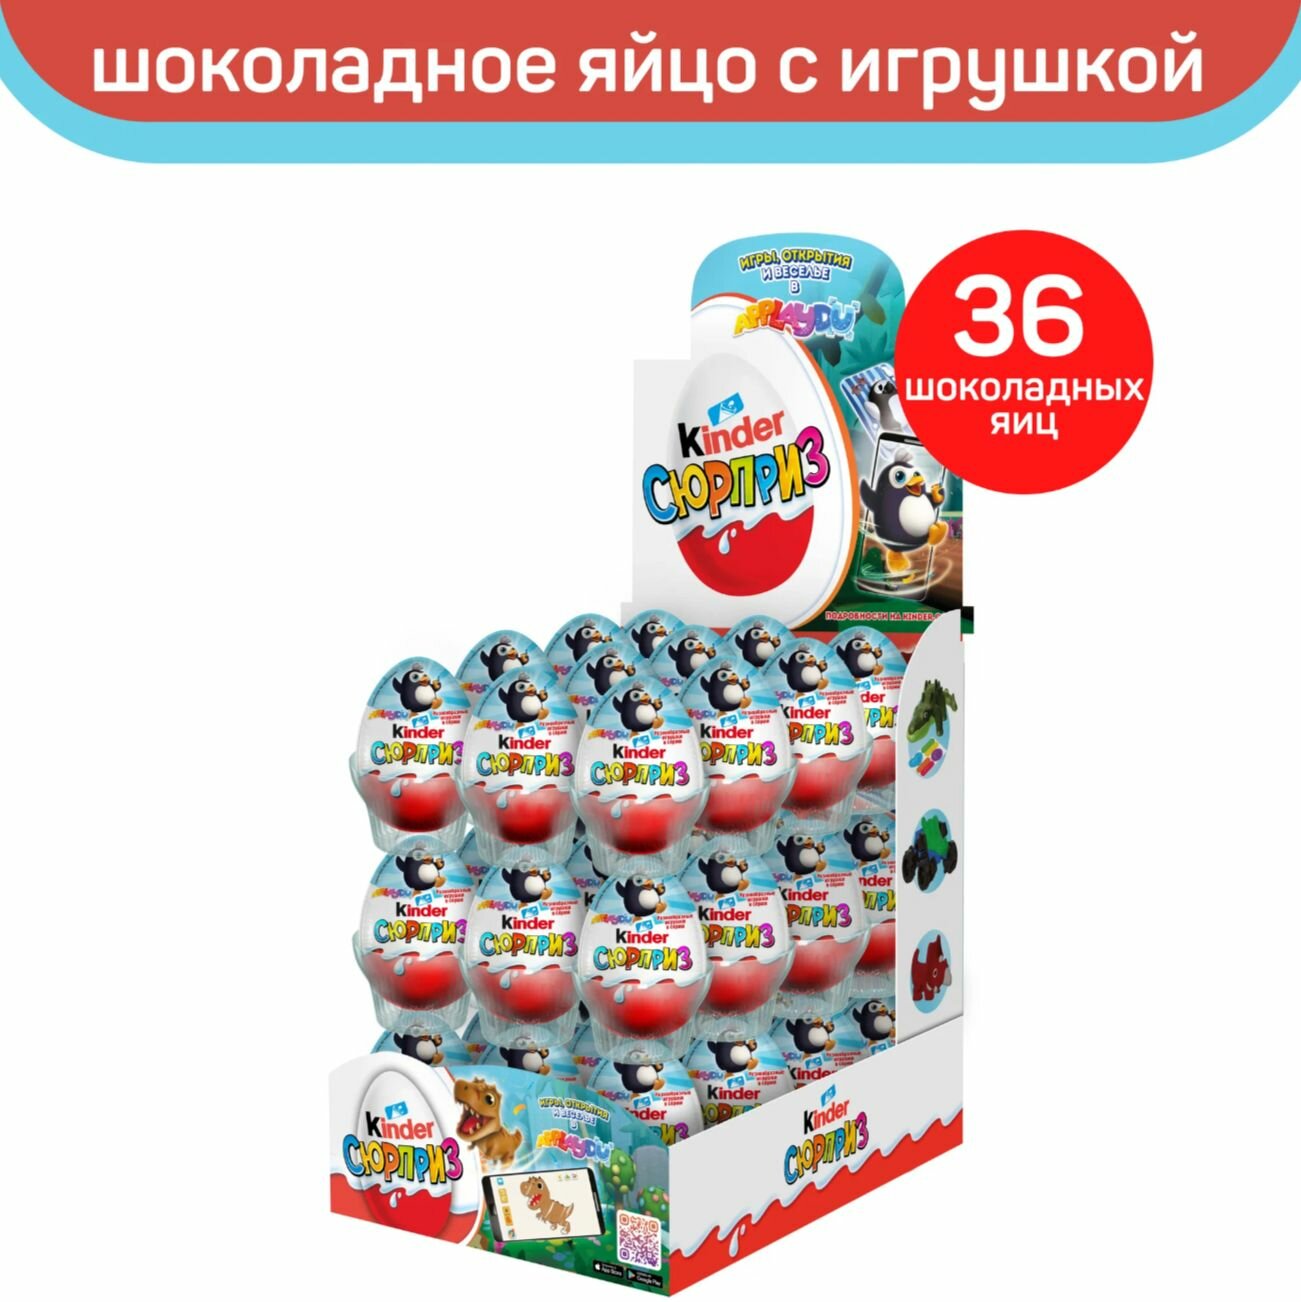 Шоколадное яйцо Kinder Сюрприз, серия Applaydu, коробка , 36 шт. в уп.